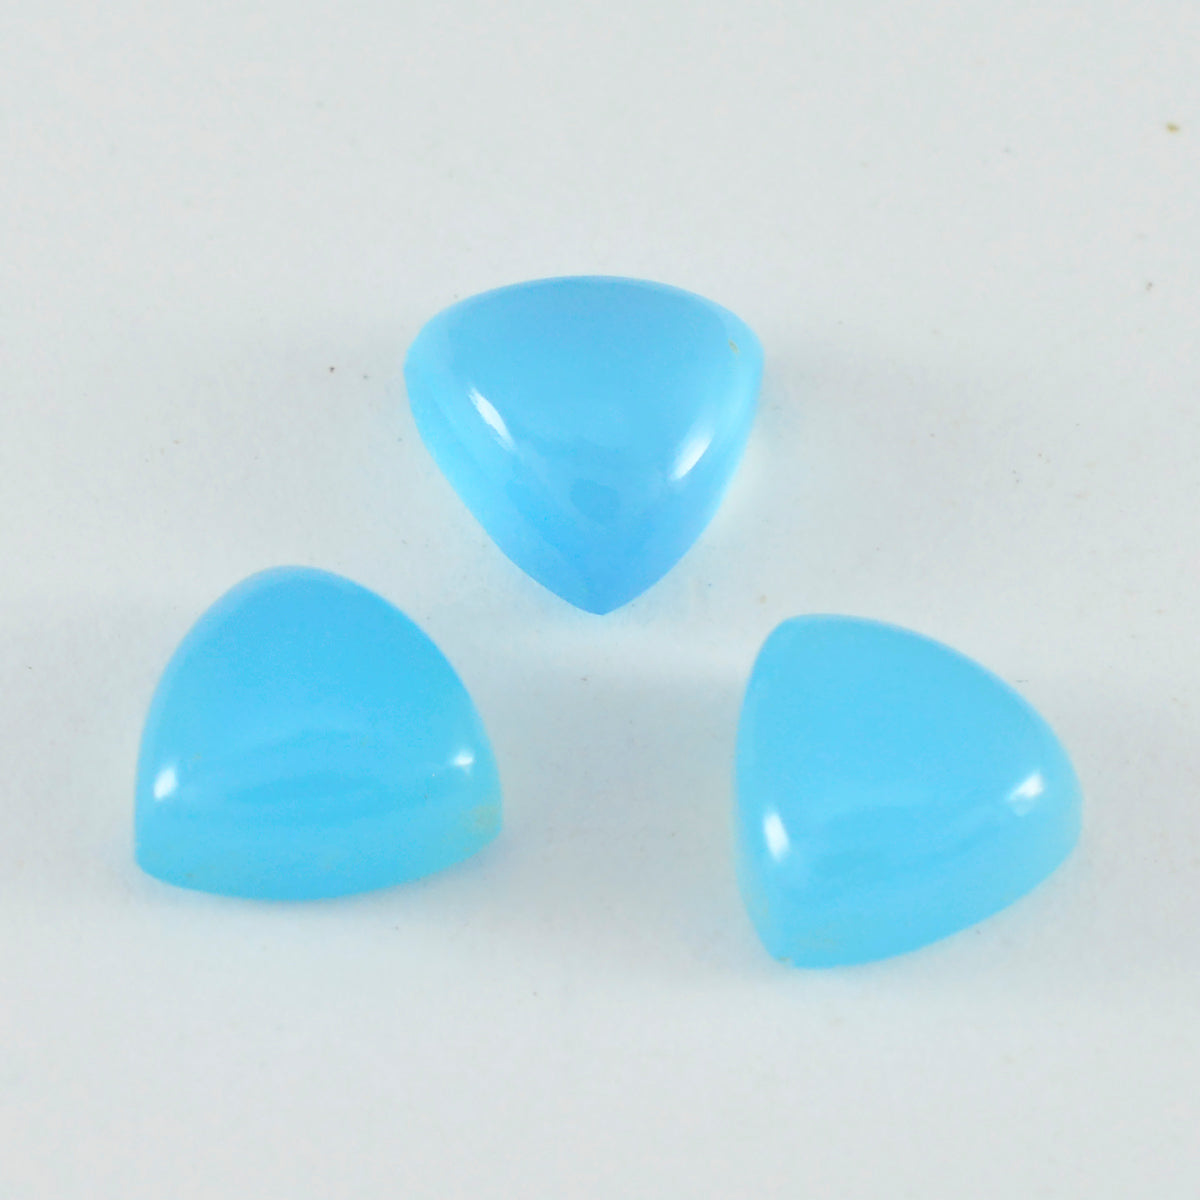 riyogems 1 шт., синий халцедон, кабошон 8x8 мм, форма триллиона, удивительное качество, свободный камень